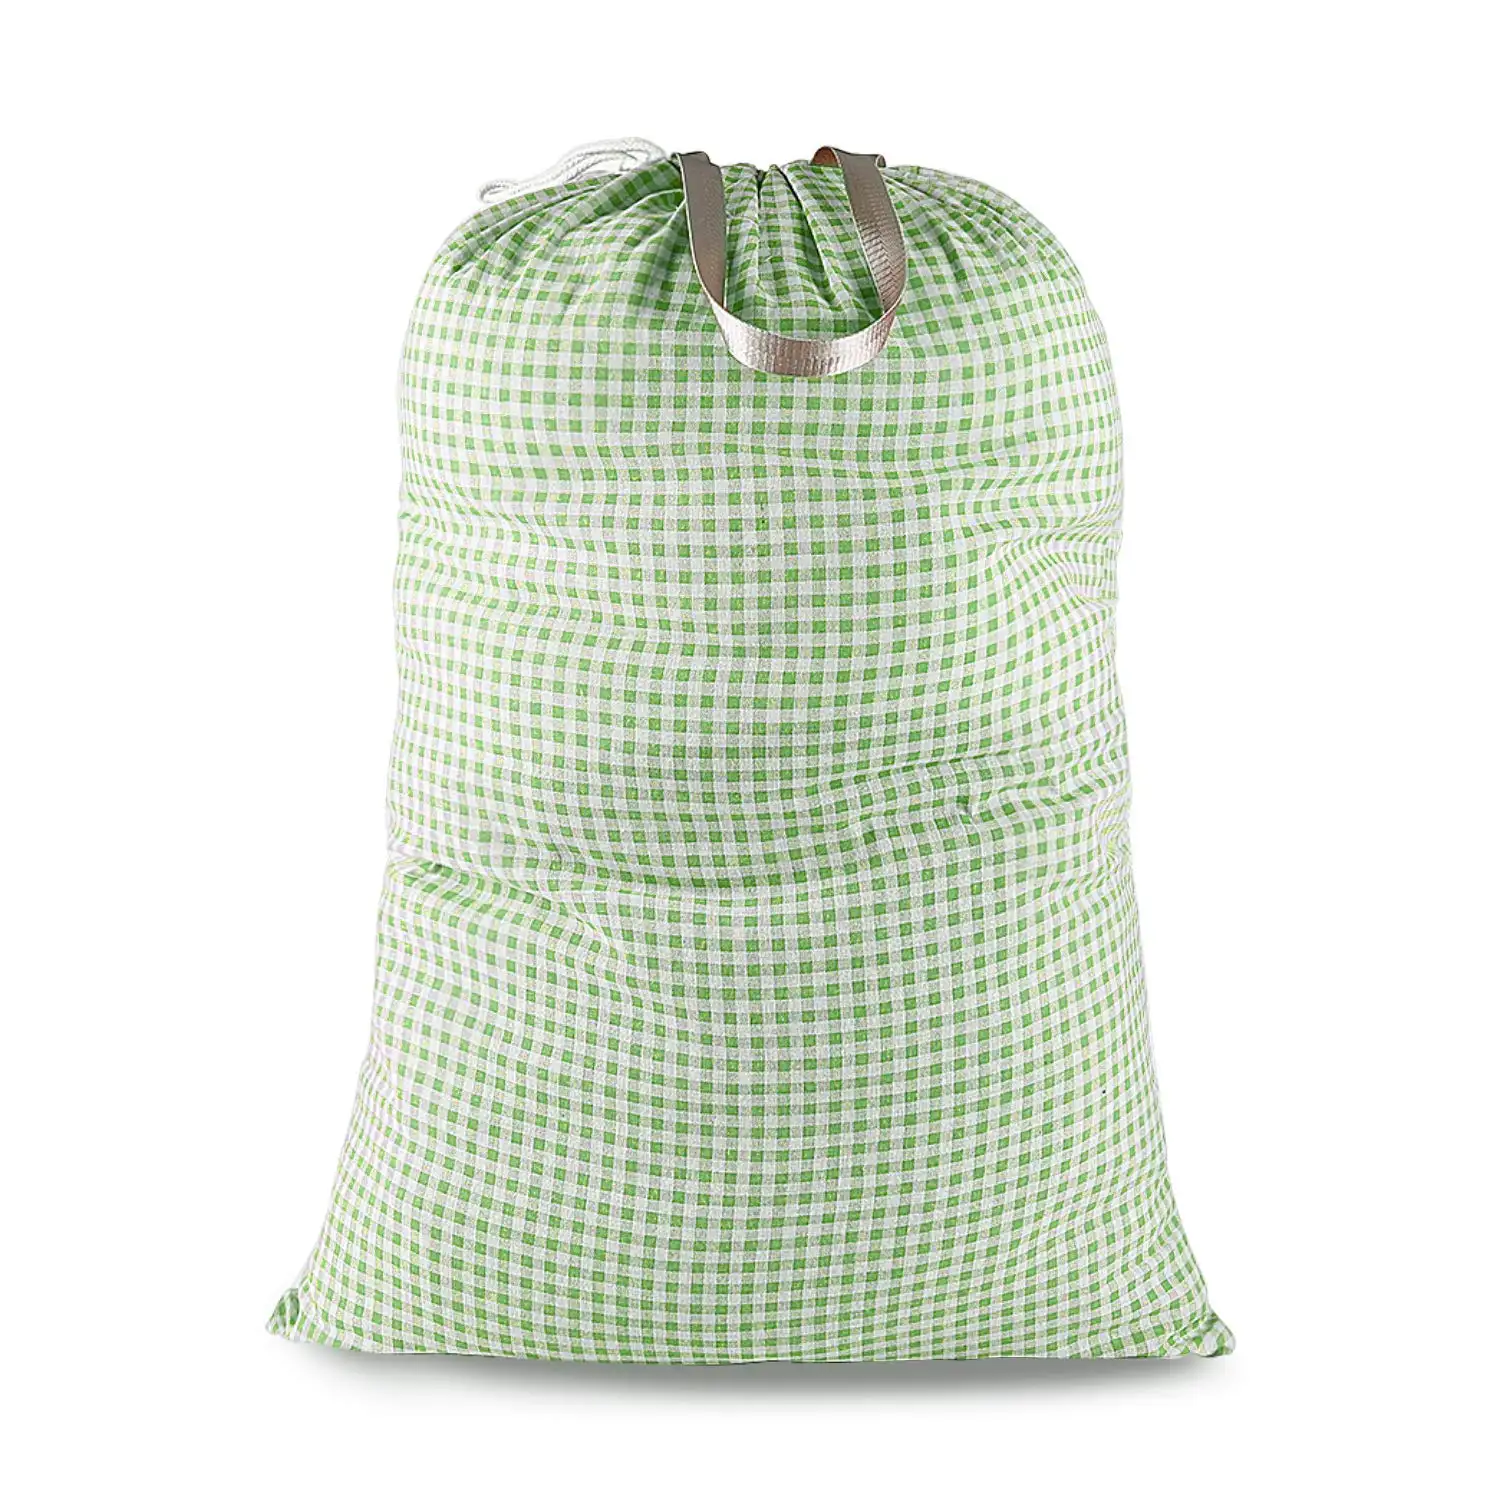 Оптовая продажа универсальных сумок для стирки для белья, для удобного складывания